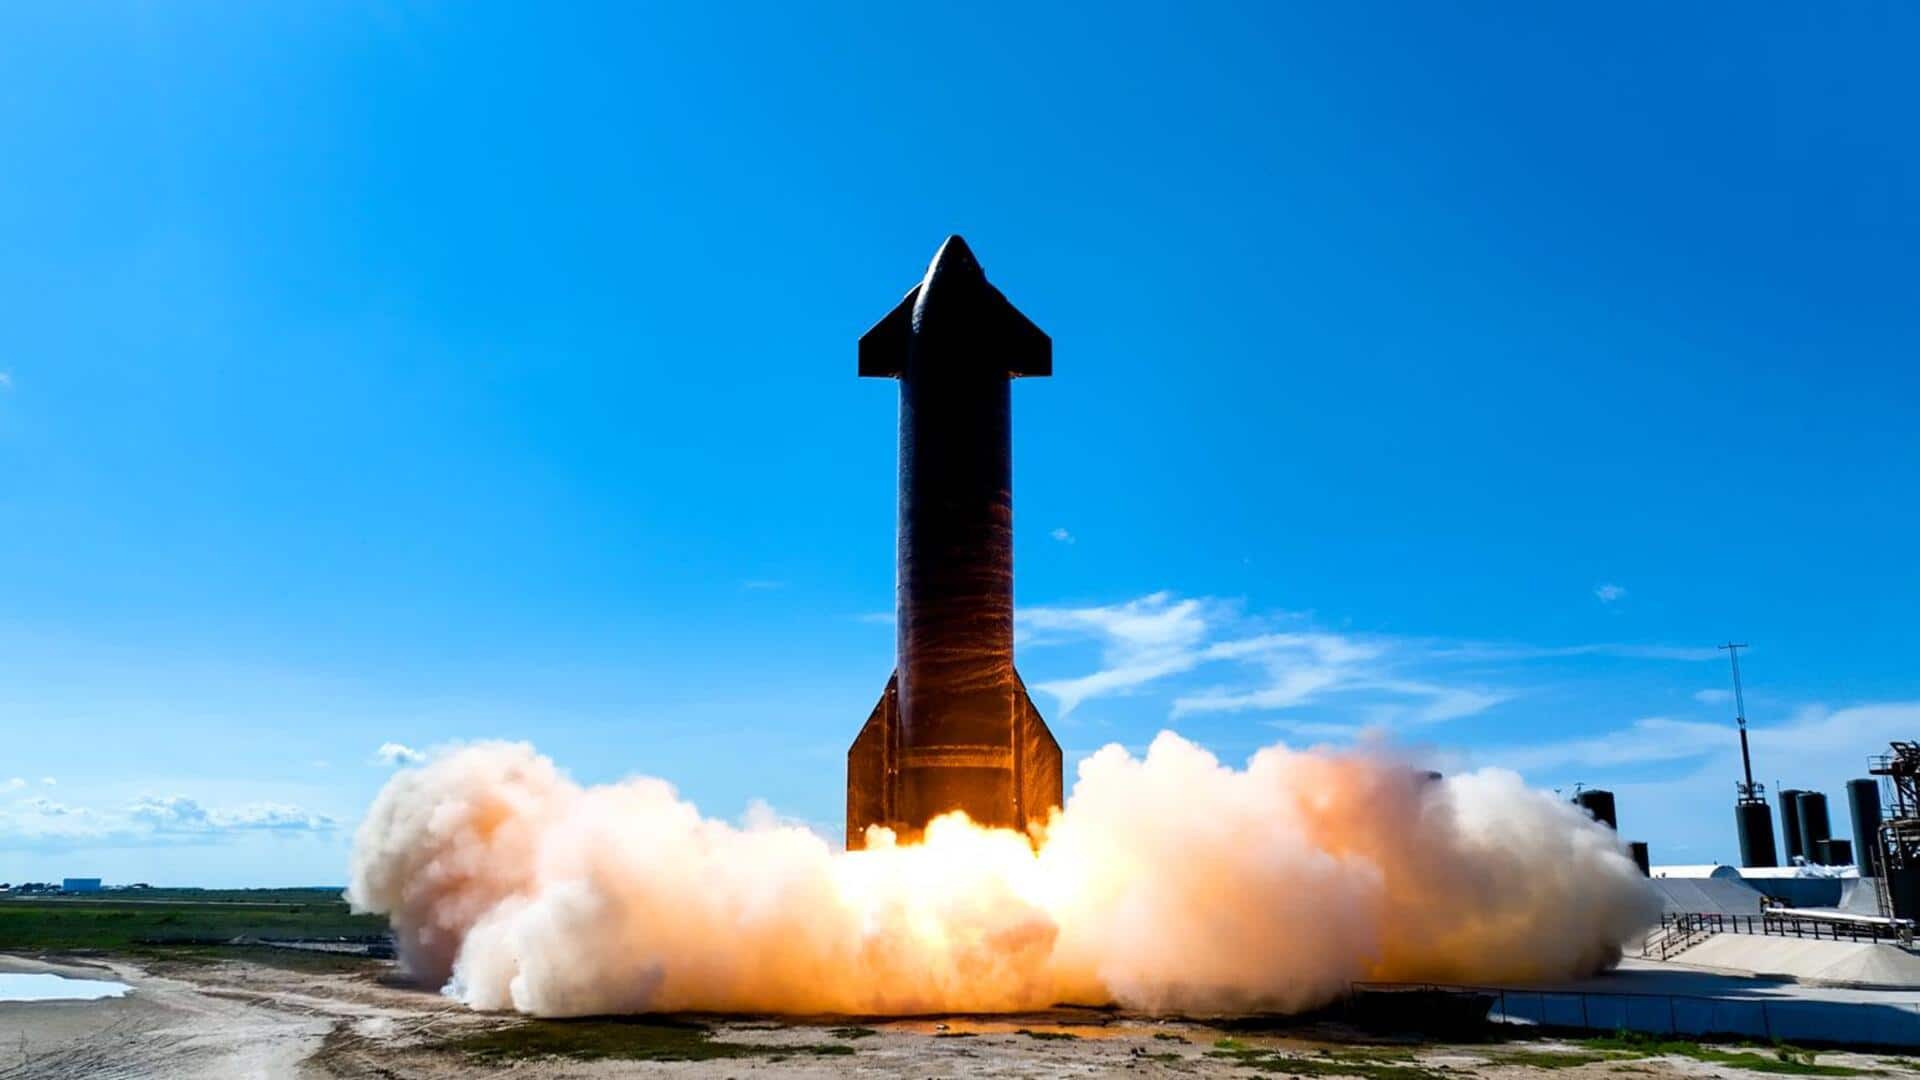 स्पेस-X ने लॉन्च की स्टारशिप रॉकेट की दूसरी टेस्ट फ्लाइट, जानिए क्यों है यह खास 